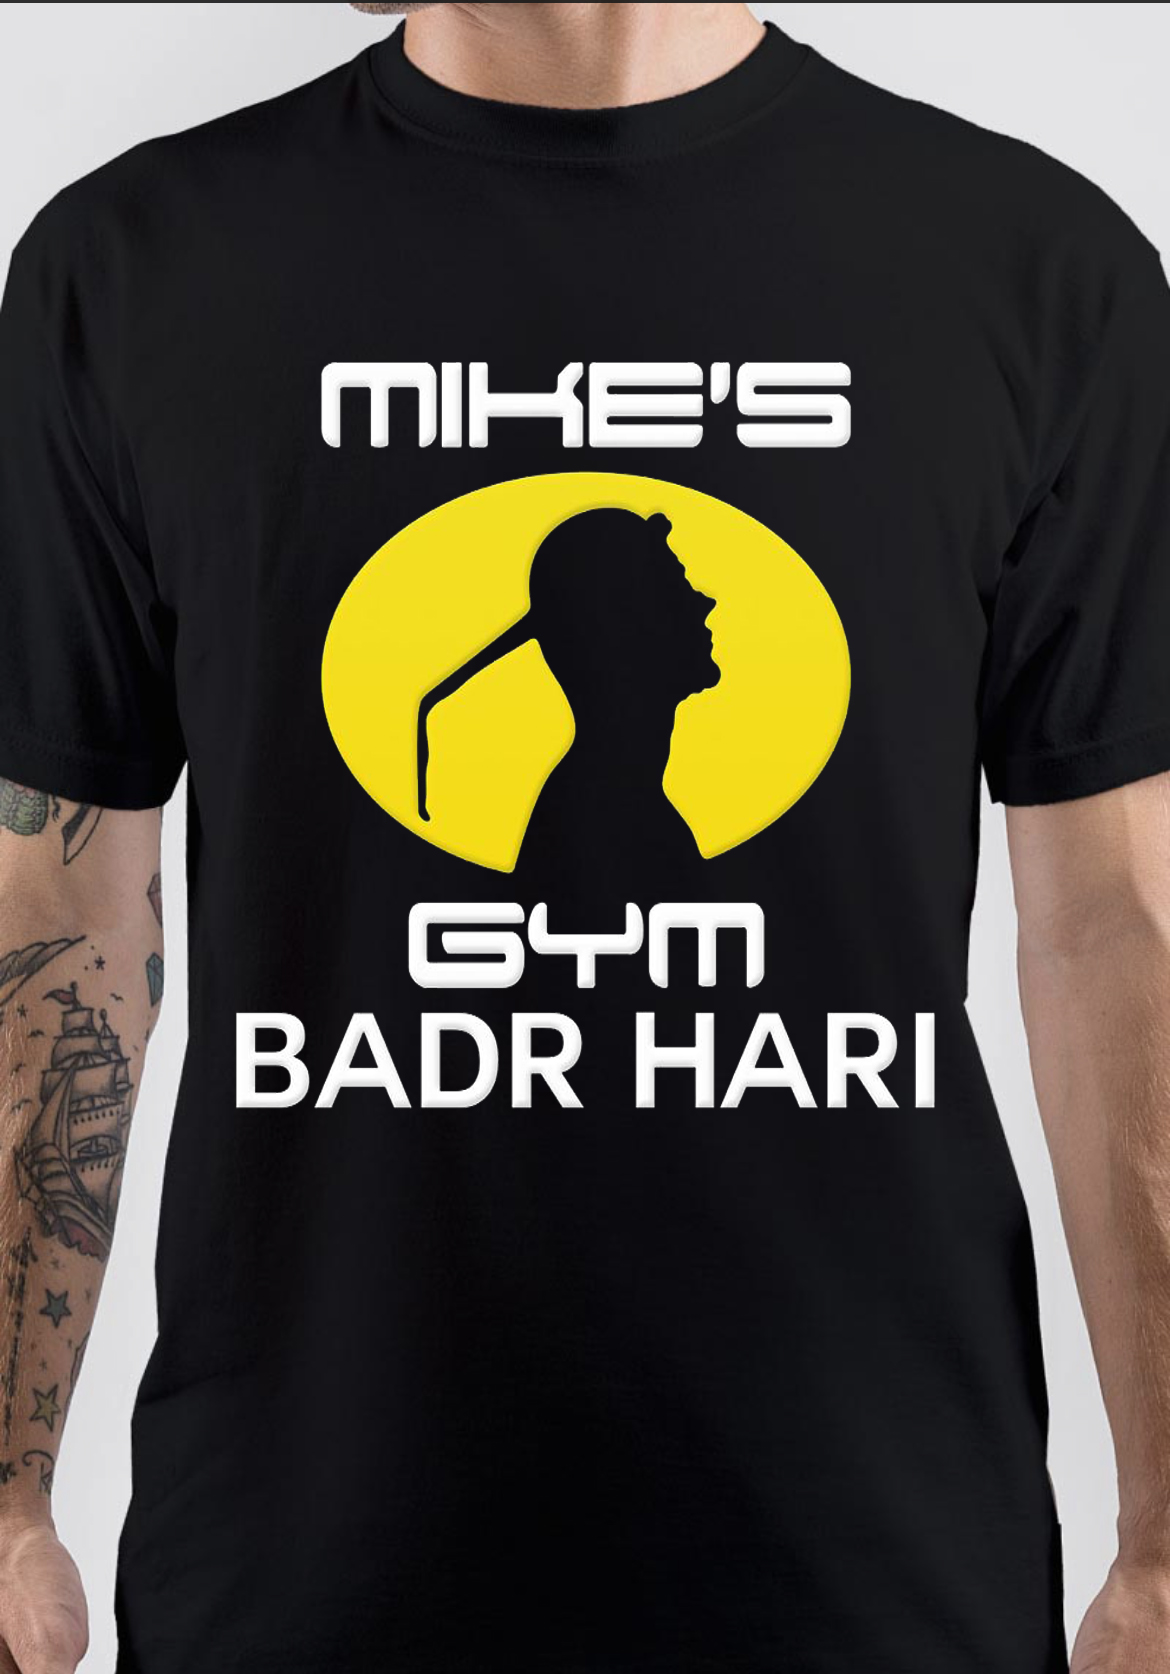 Badr Hari T-Shirt And Merchandise